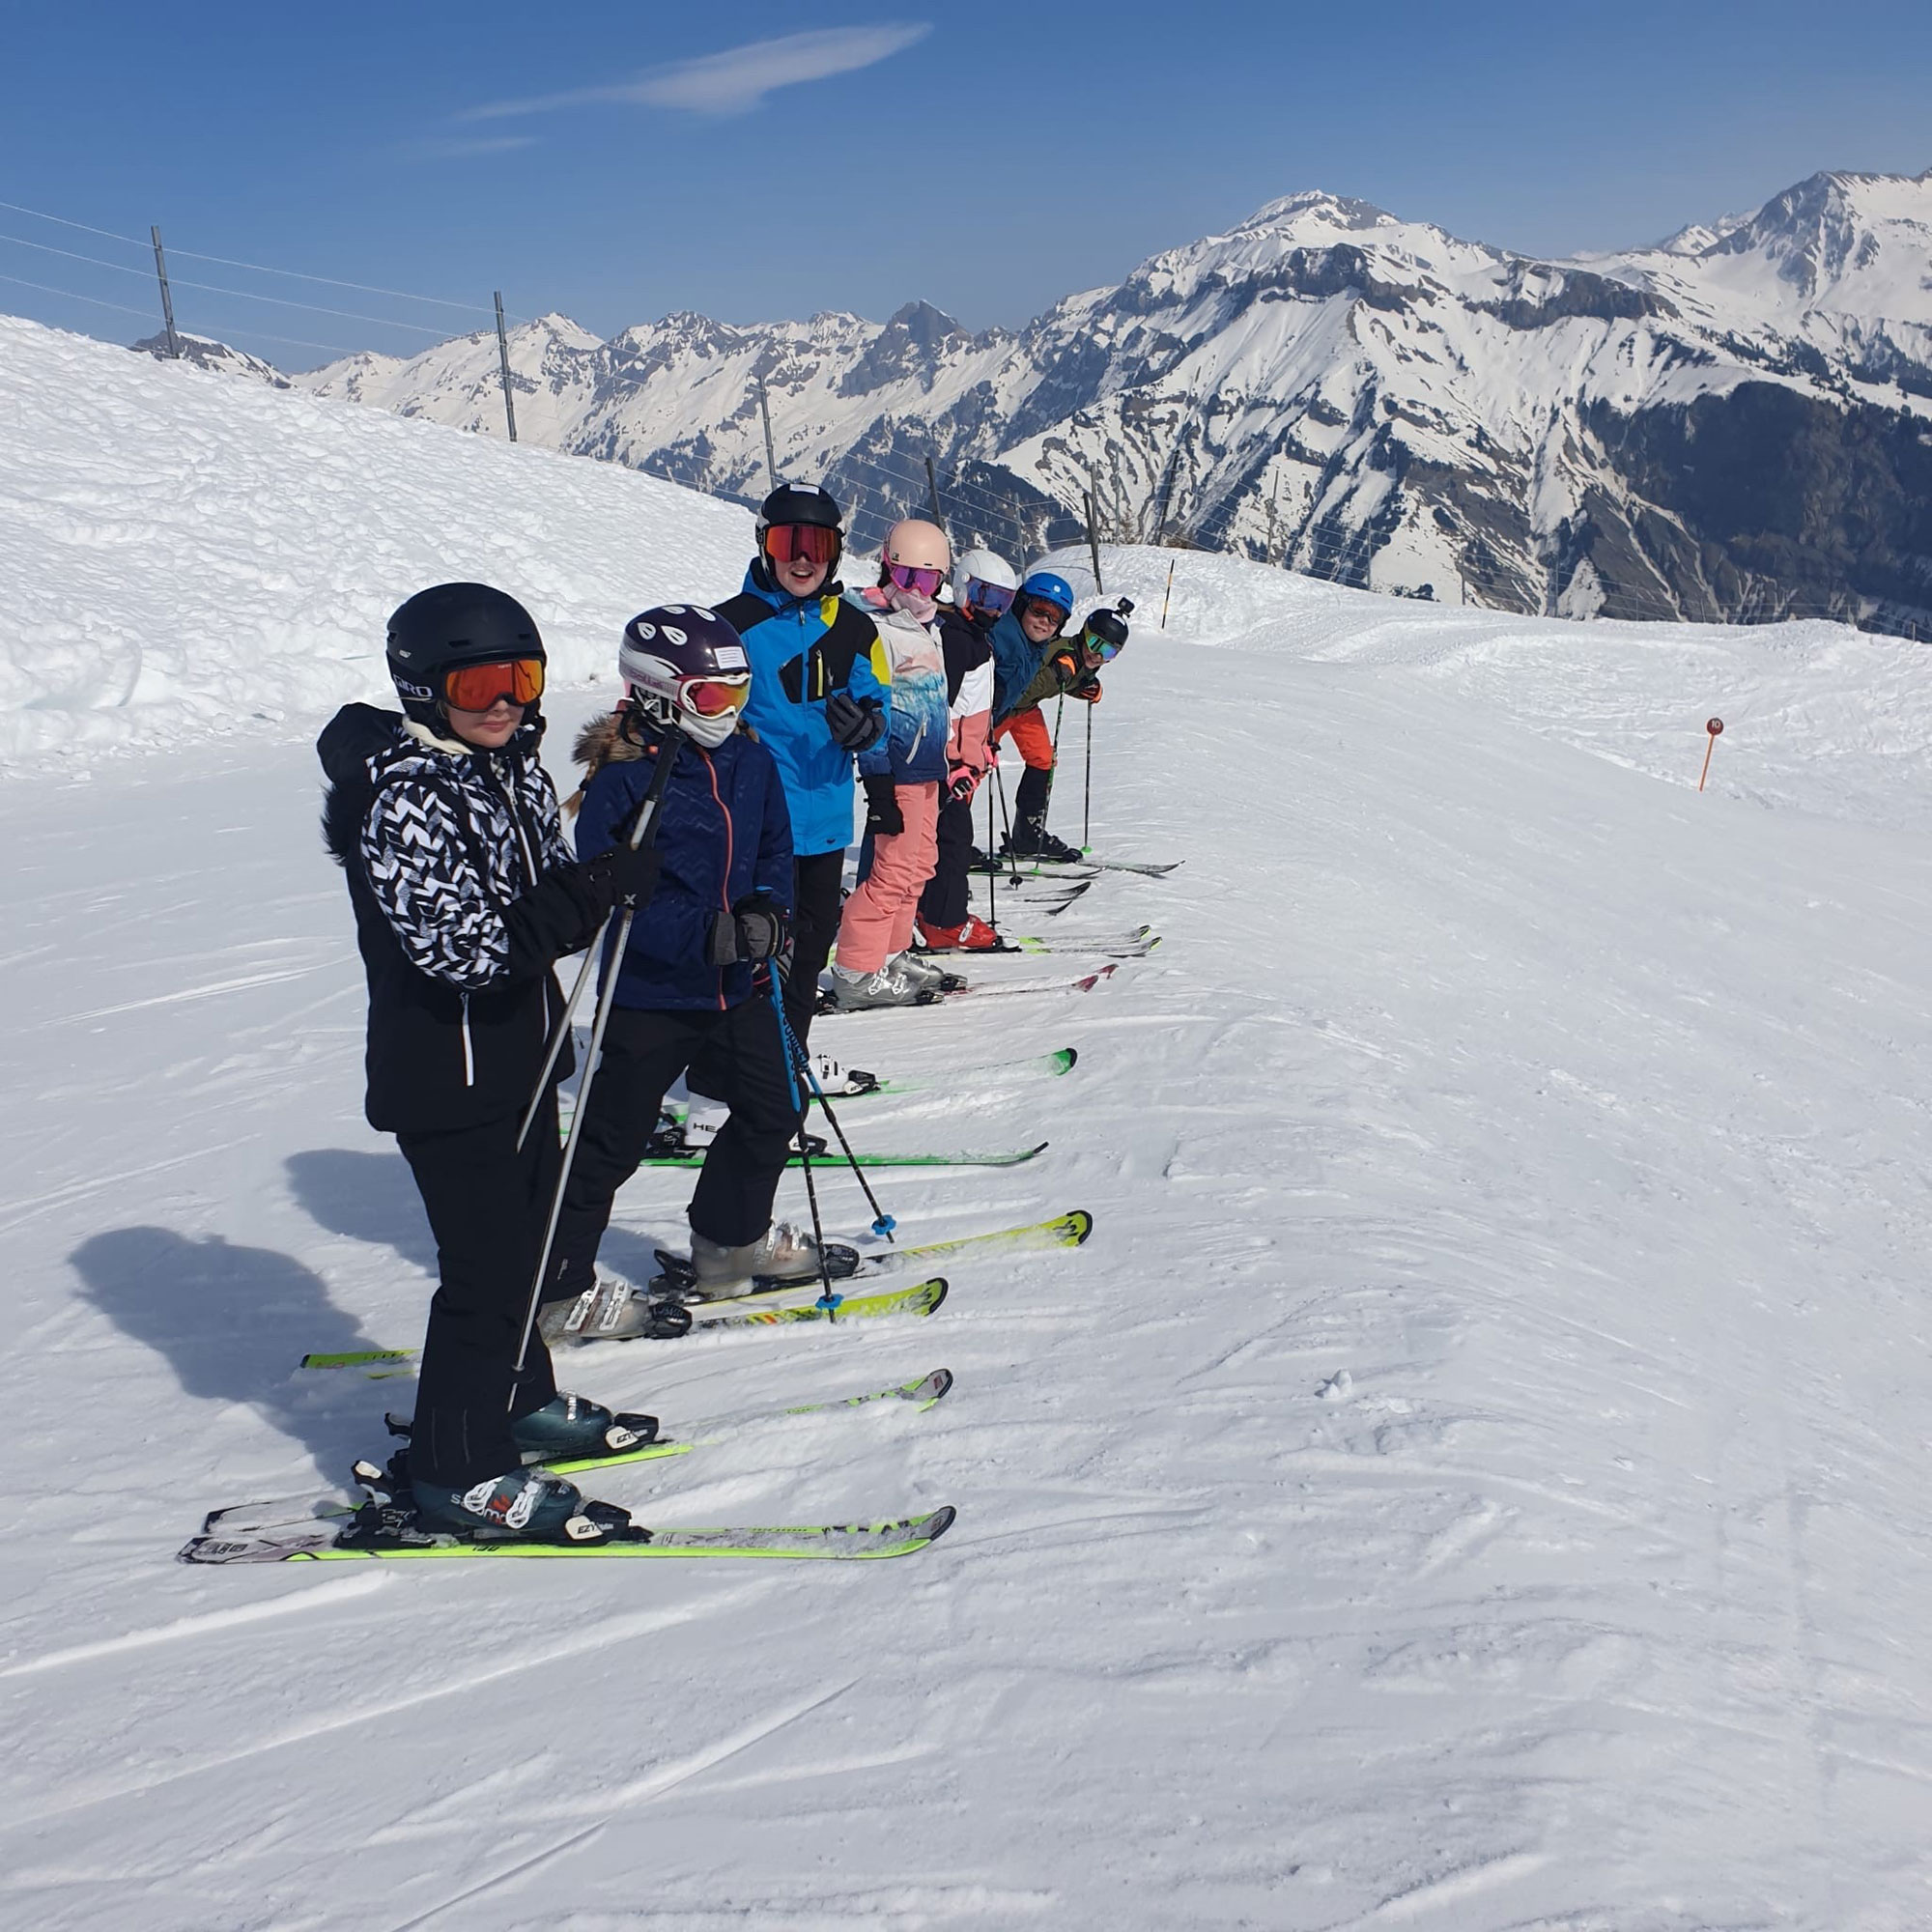 Schülerinnen und Schüler stehen am Skitag nebeneinander auf Skiern auf der Skipiste.	